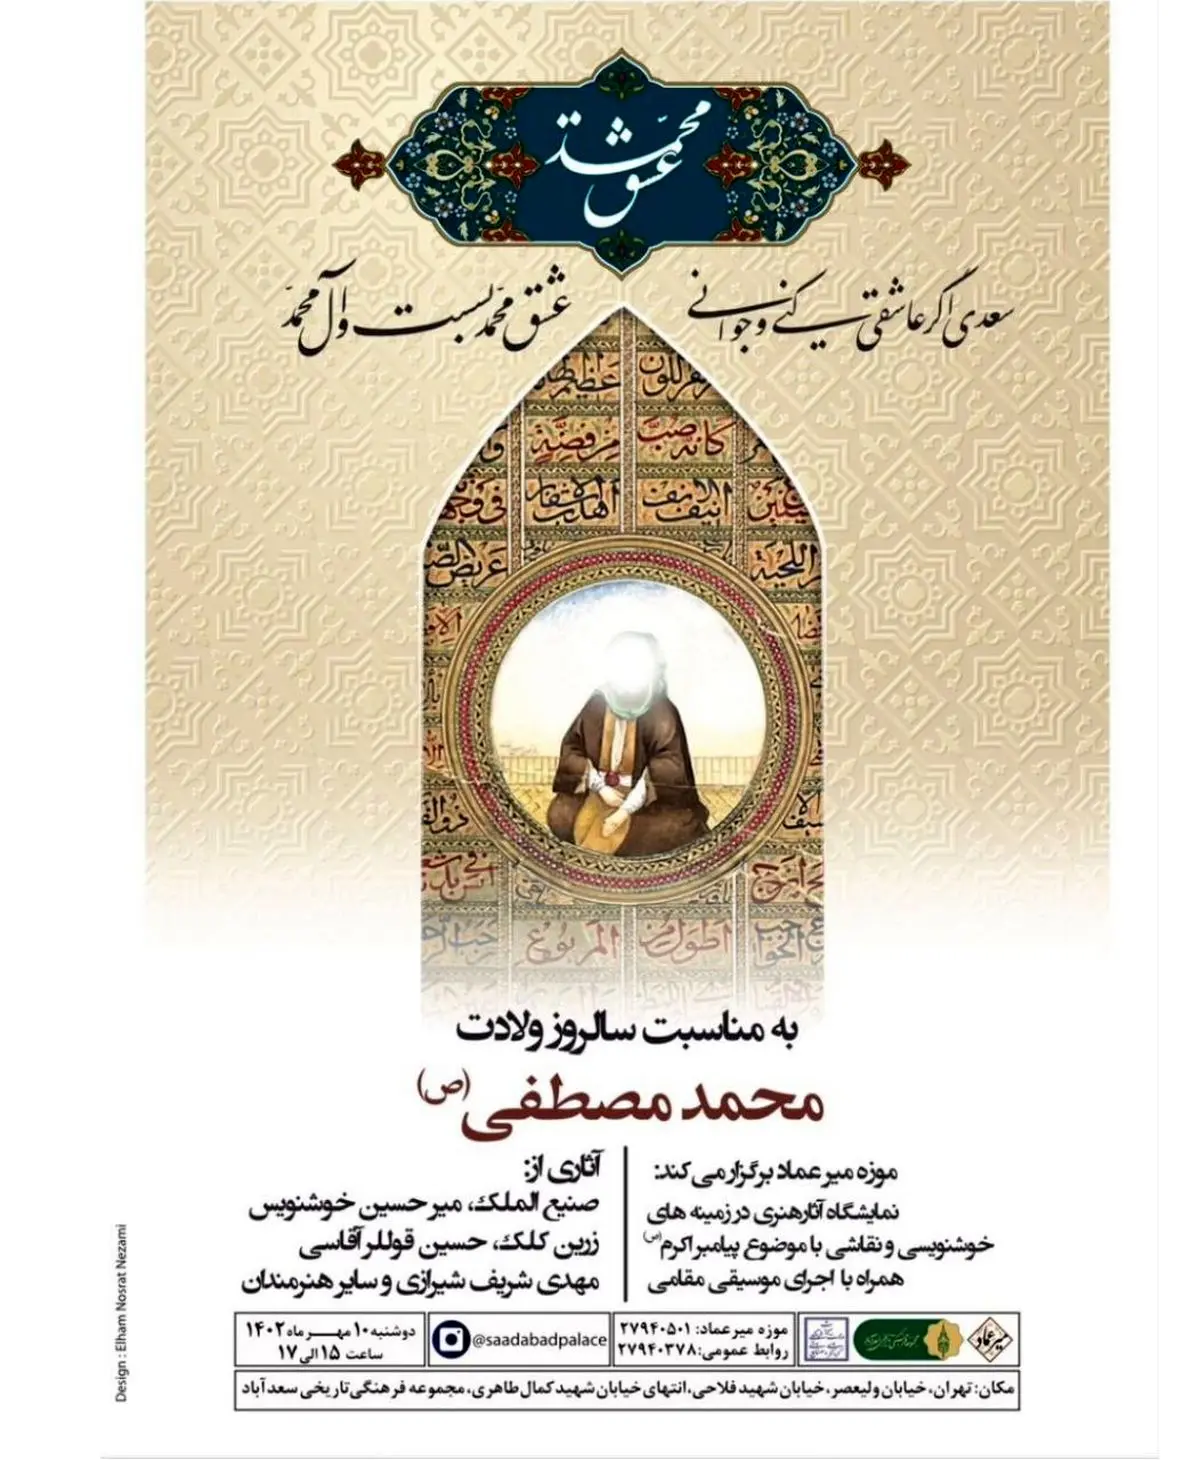 نمایش آثار هنری فاخر با موضوع پیامبر گرامی اسلام در نمایشگاه «عشق محمد»